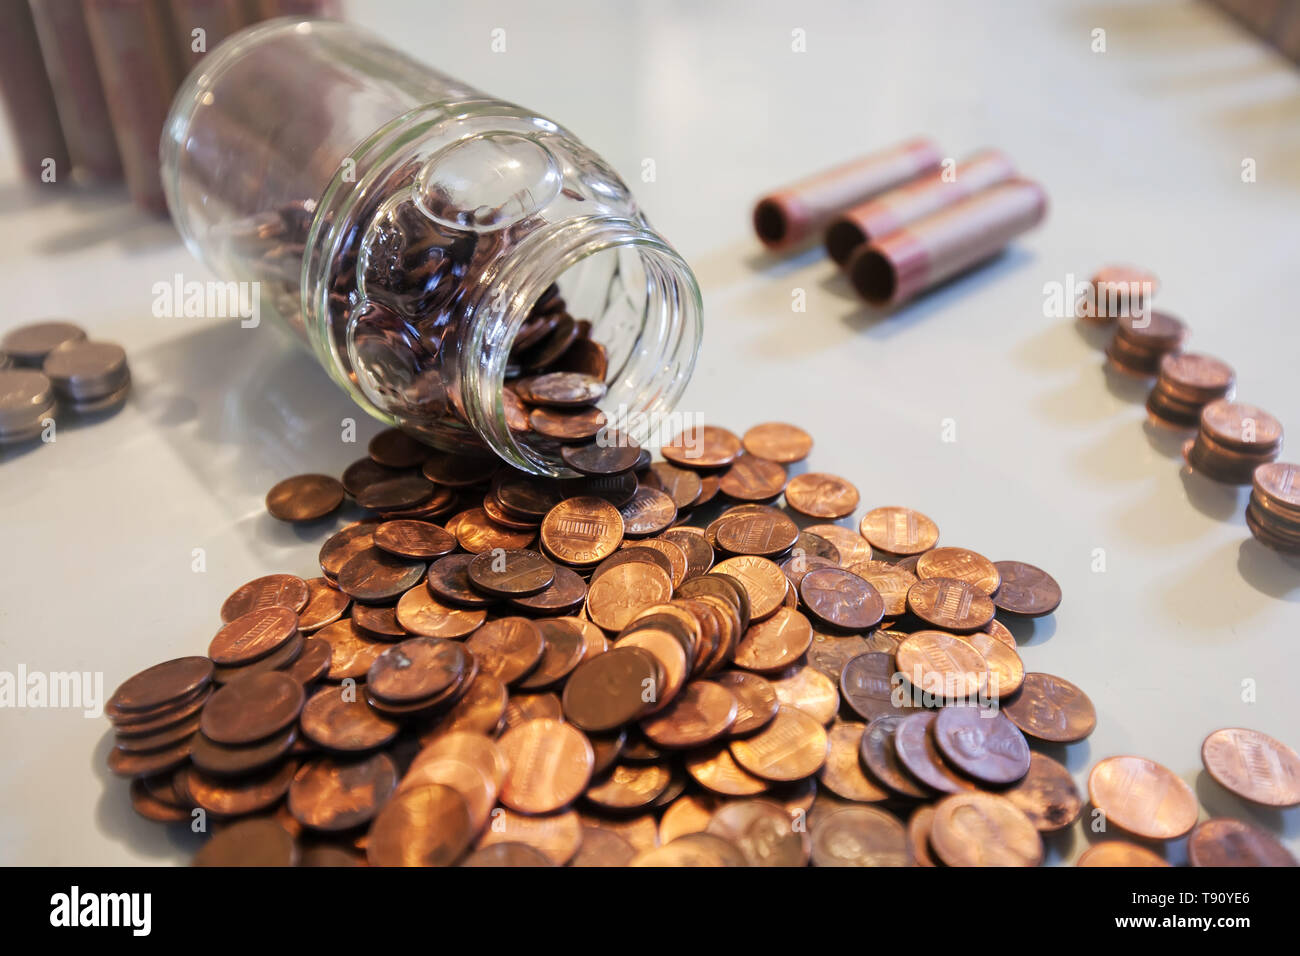 Una jarra de cristal derramado de centavos y monedas de hucha o cambio de repuesto de ahorro. Foto de stock